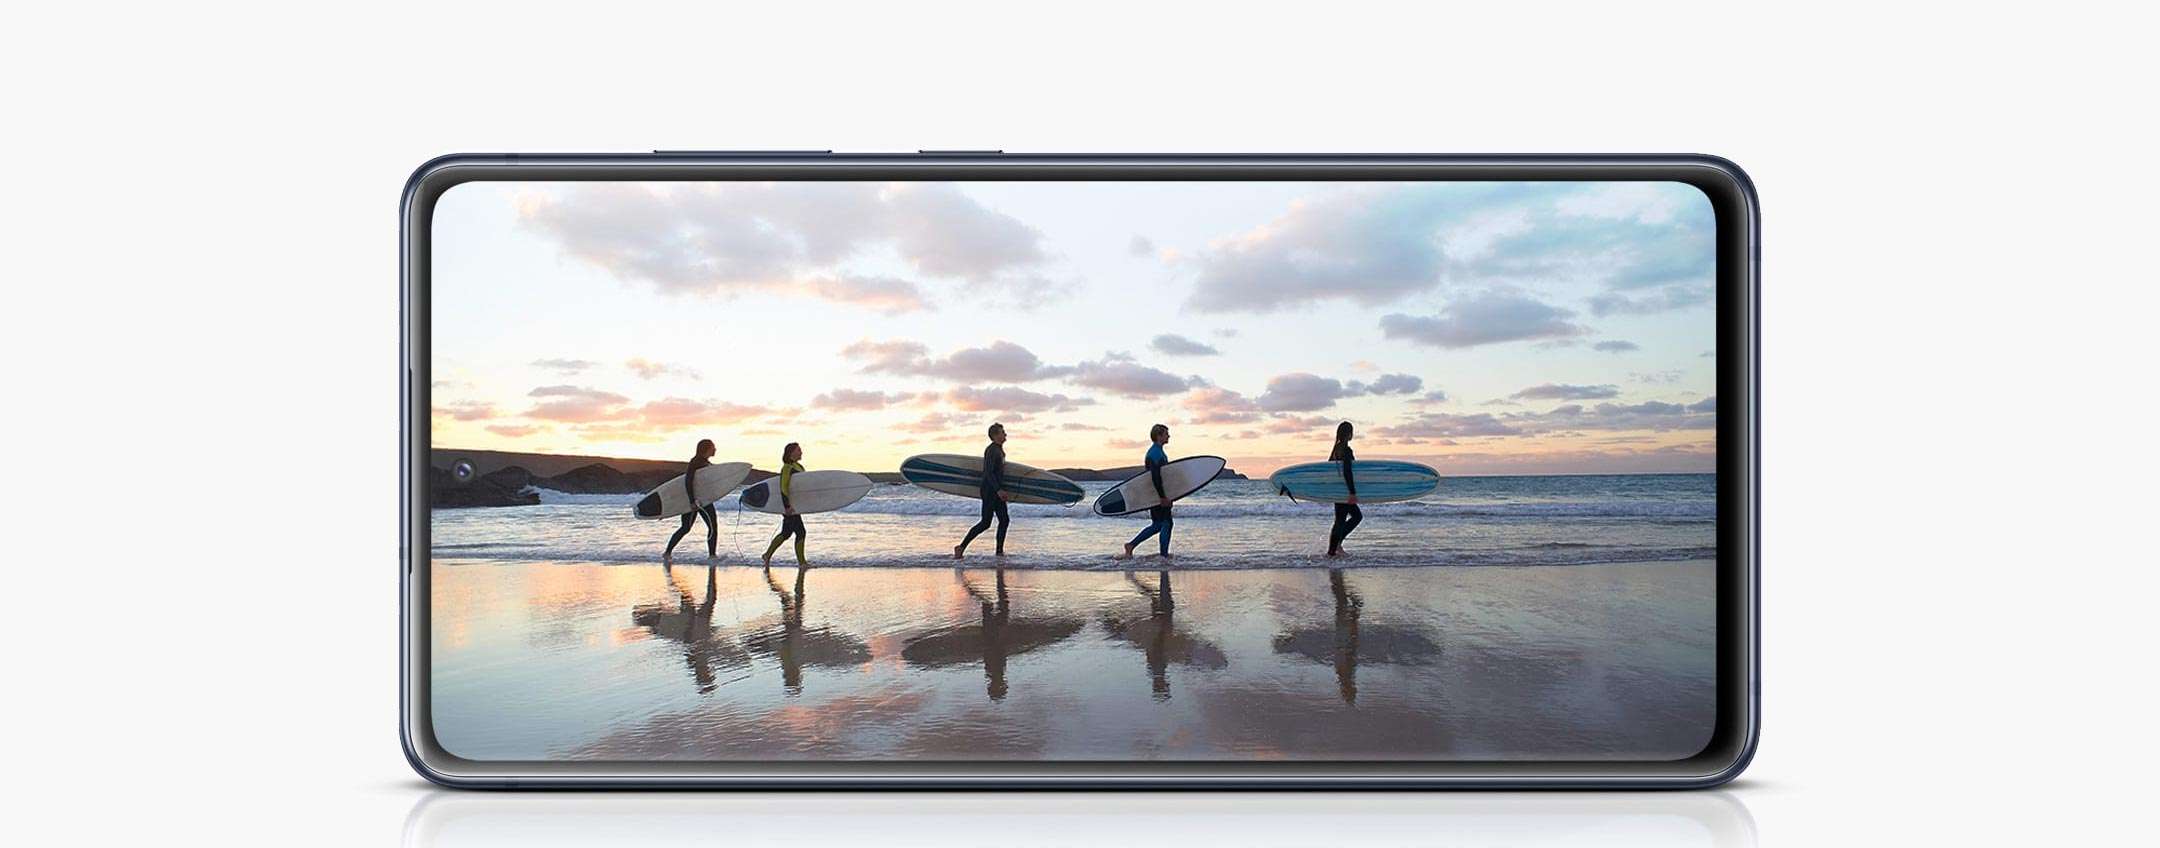 Samsung Galaxy S20 FE 5G si aggiorna: tutte le novità dell'update